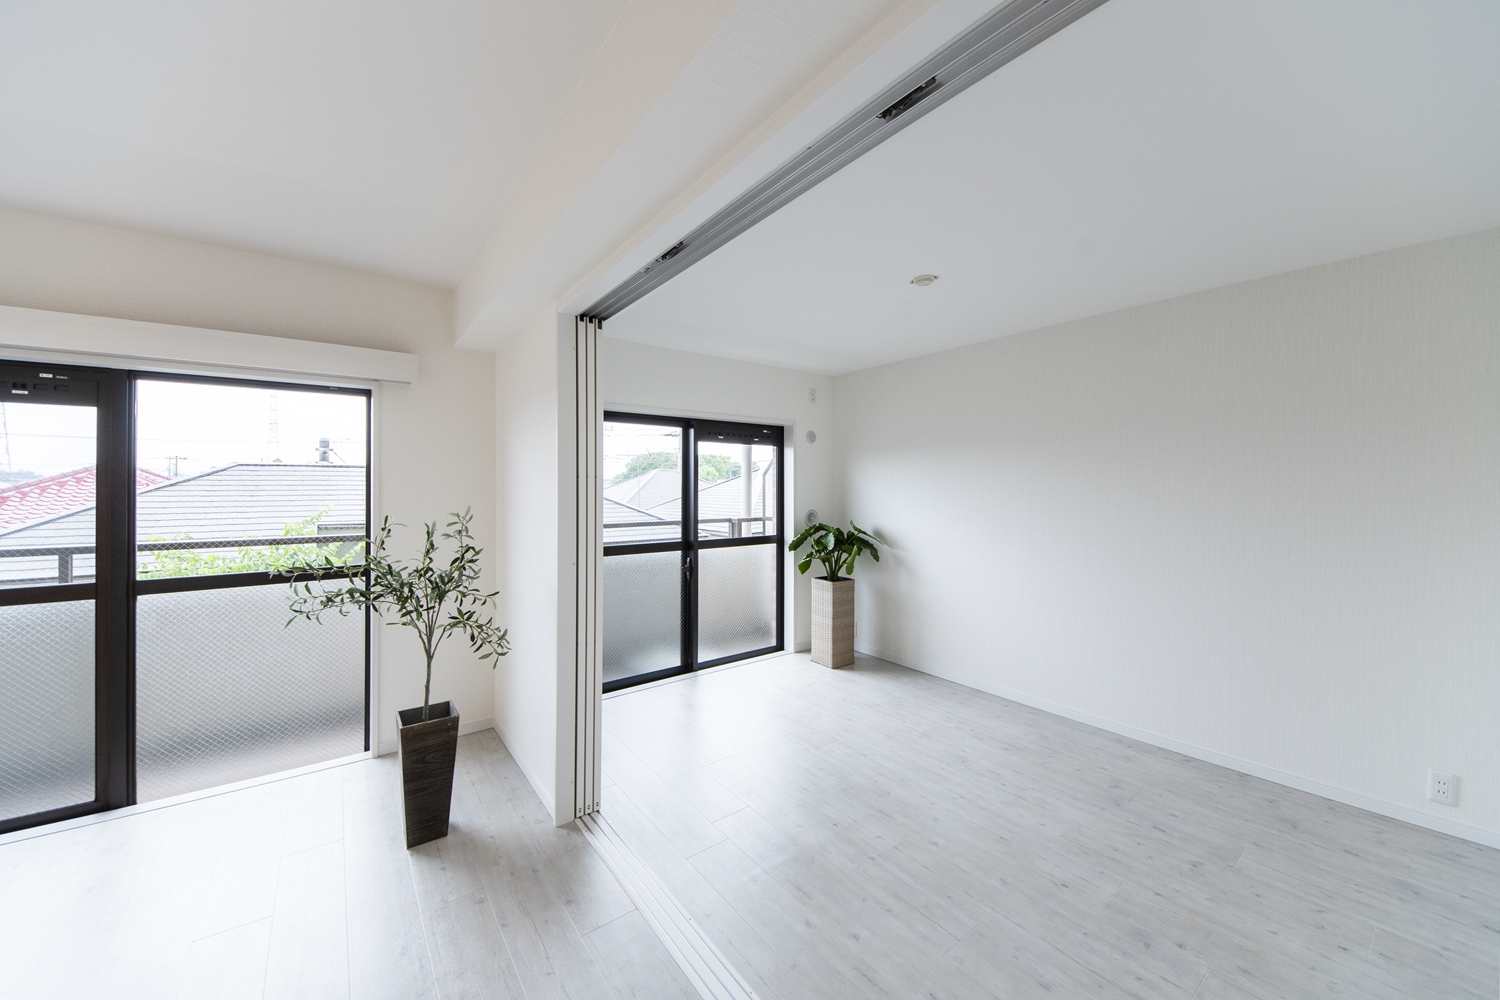 美しく繊細な木目調の白い床材が窓から差し込む光を反射し、お部屋を優しく包み込みます。